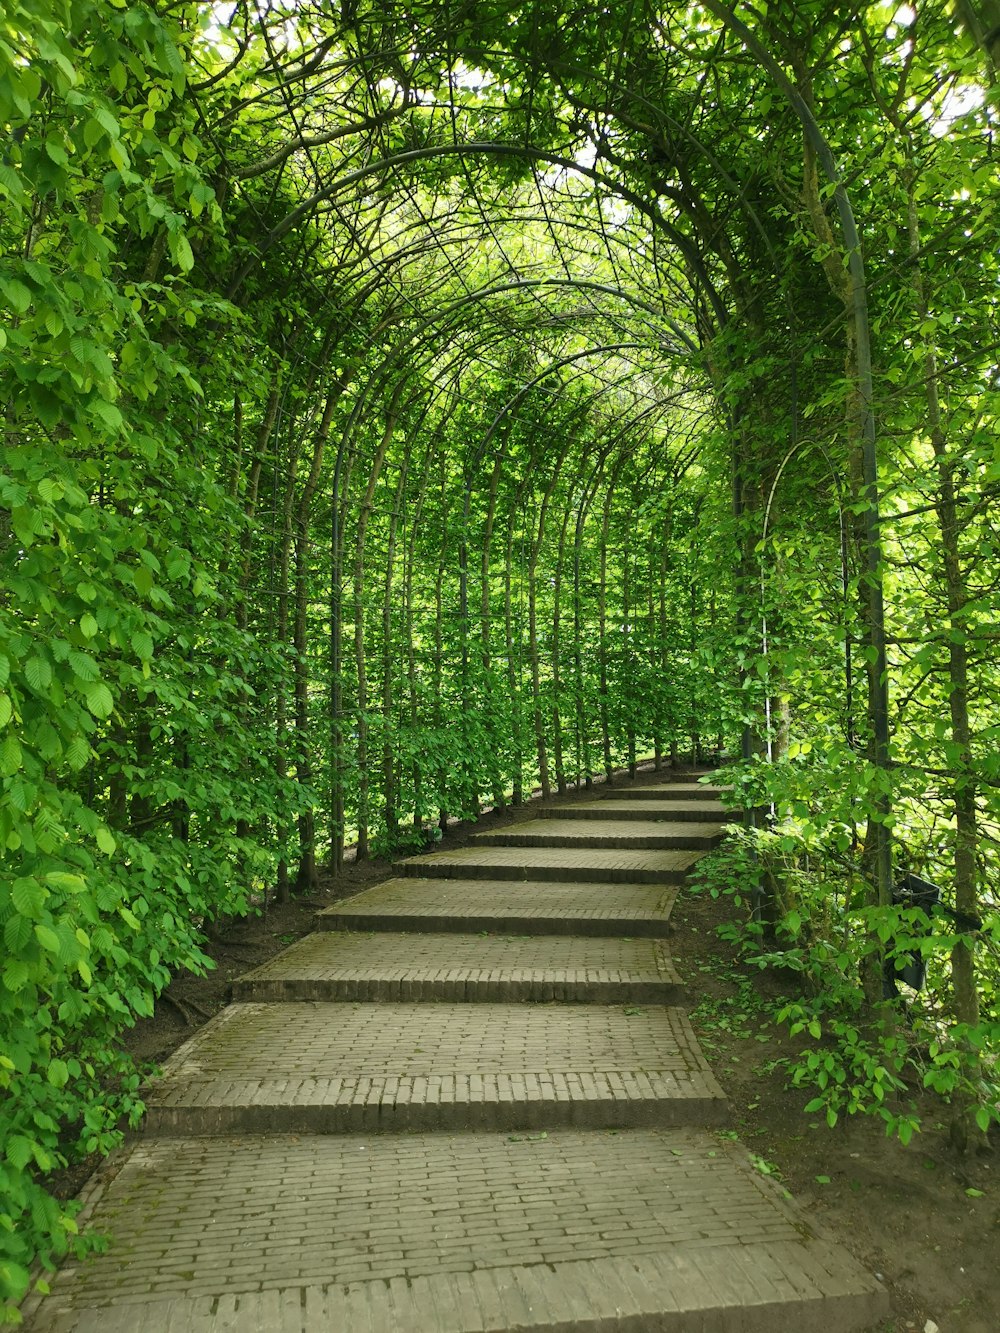 Plants de vigne verte sur les allées couvertes d’arc